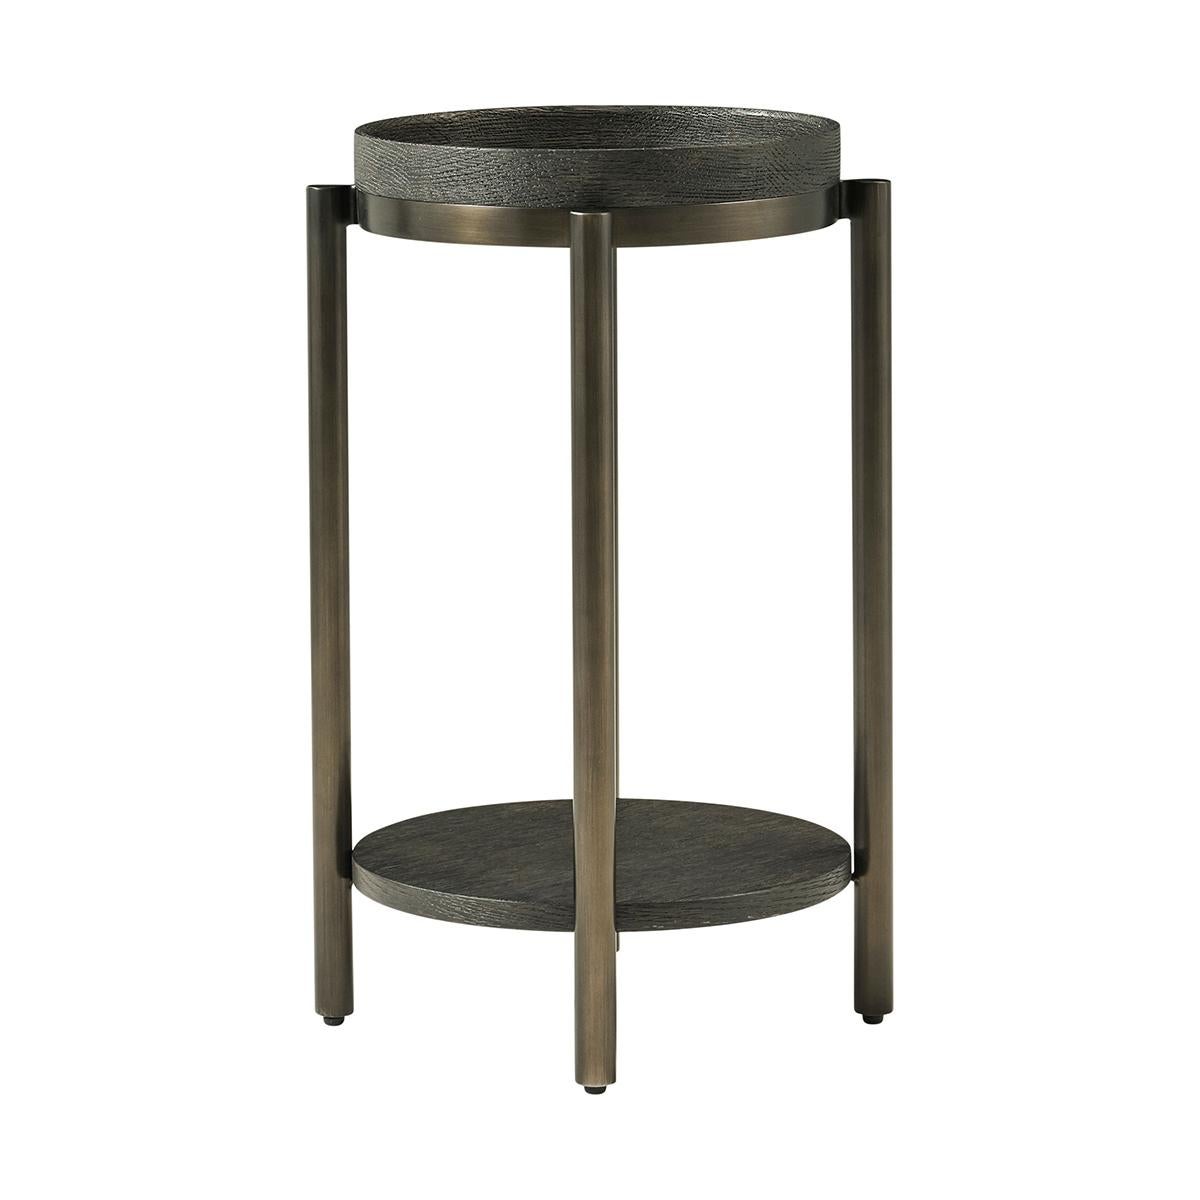 Vietnamese Modern Round Accent Table - Dark For Sale